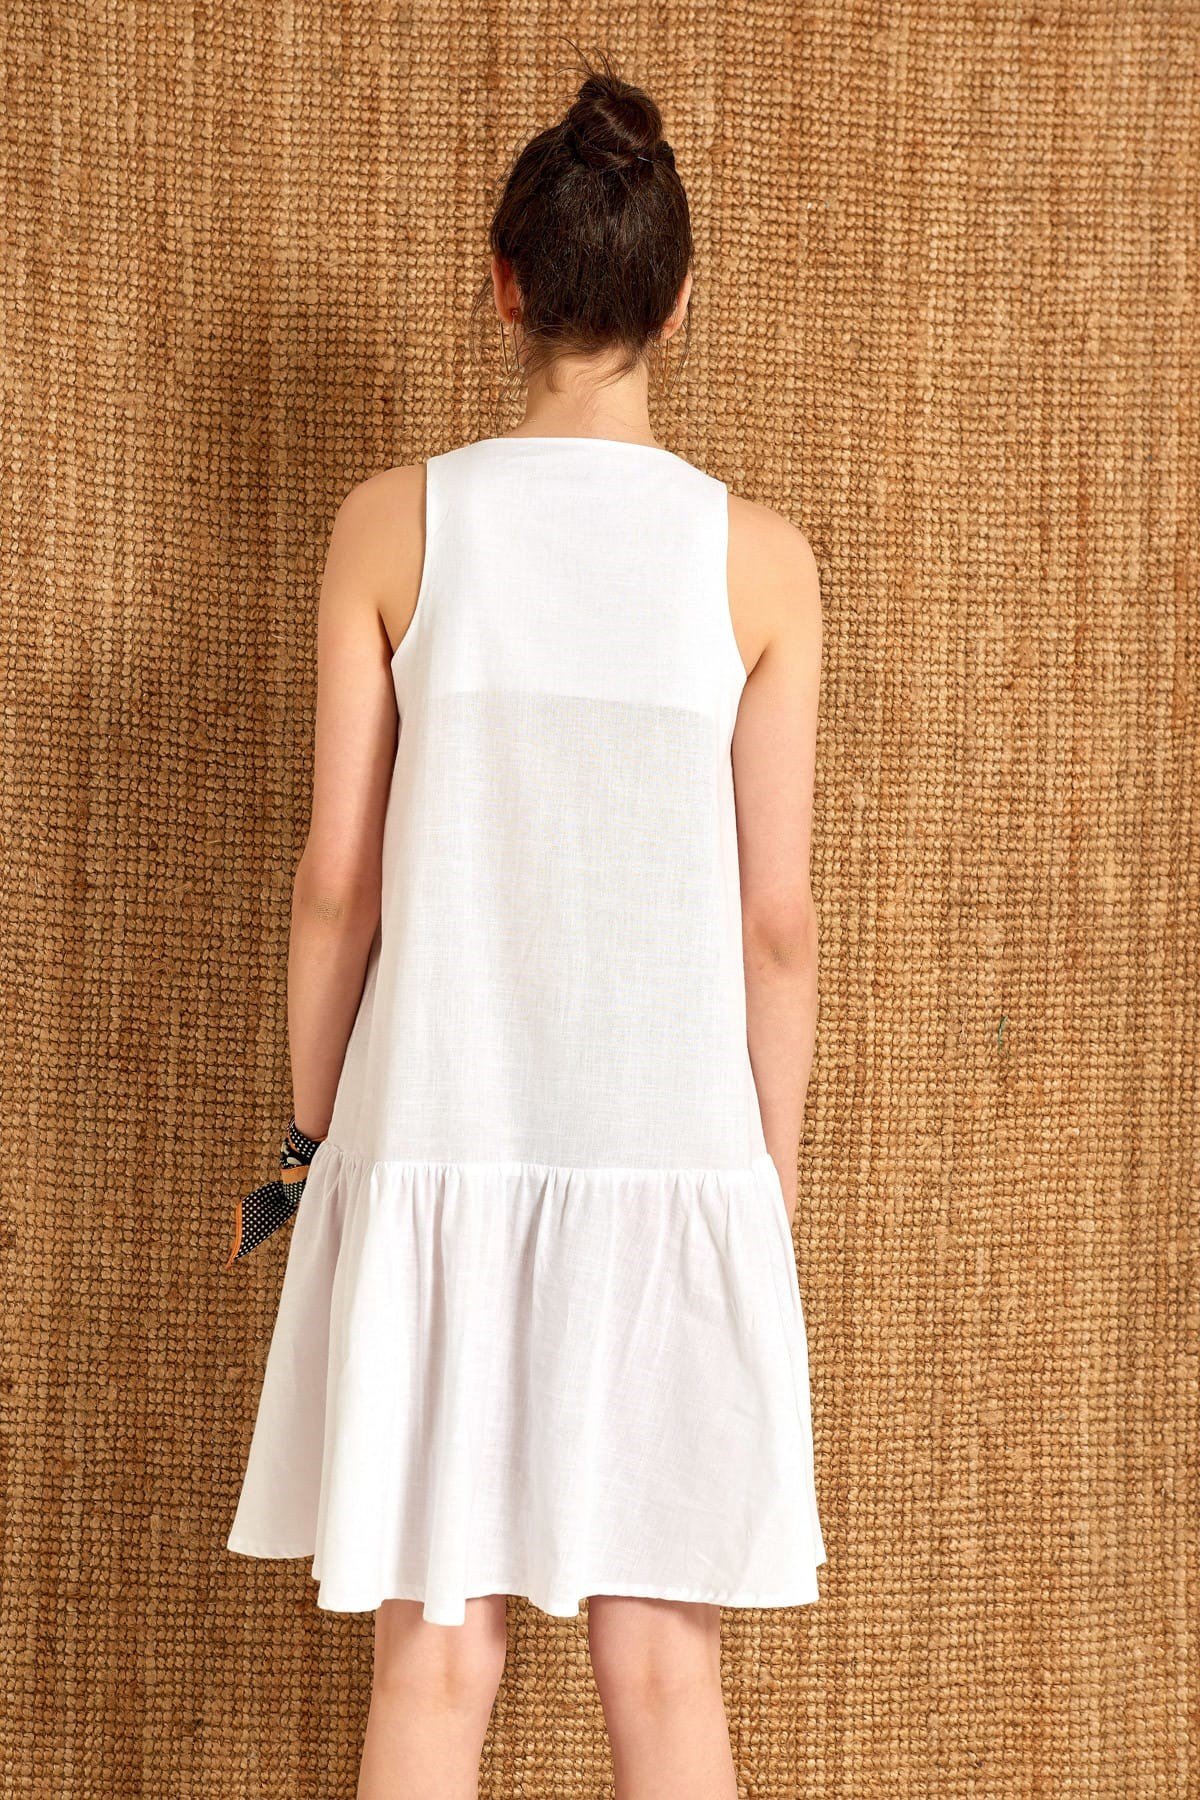 2120-Beyaz Kolsuz Eteği Fırfırlı Elbise-12K